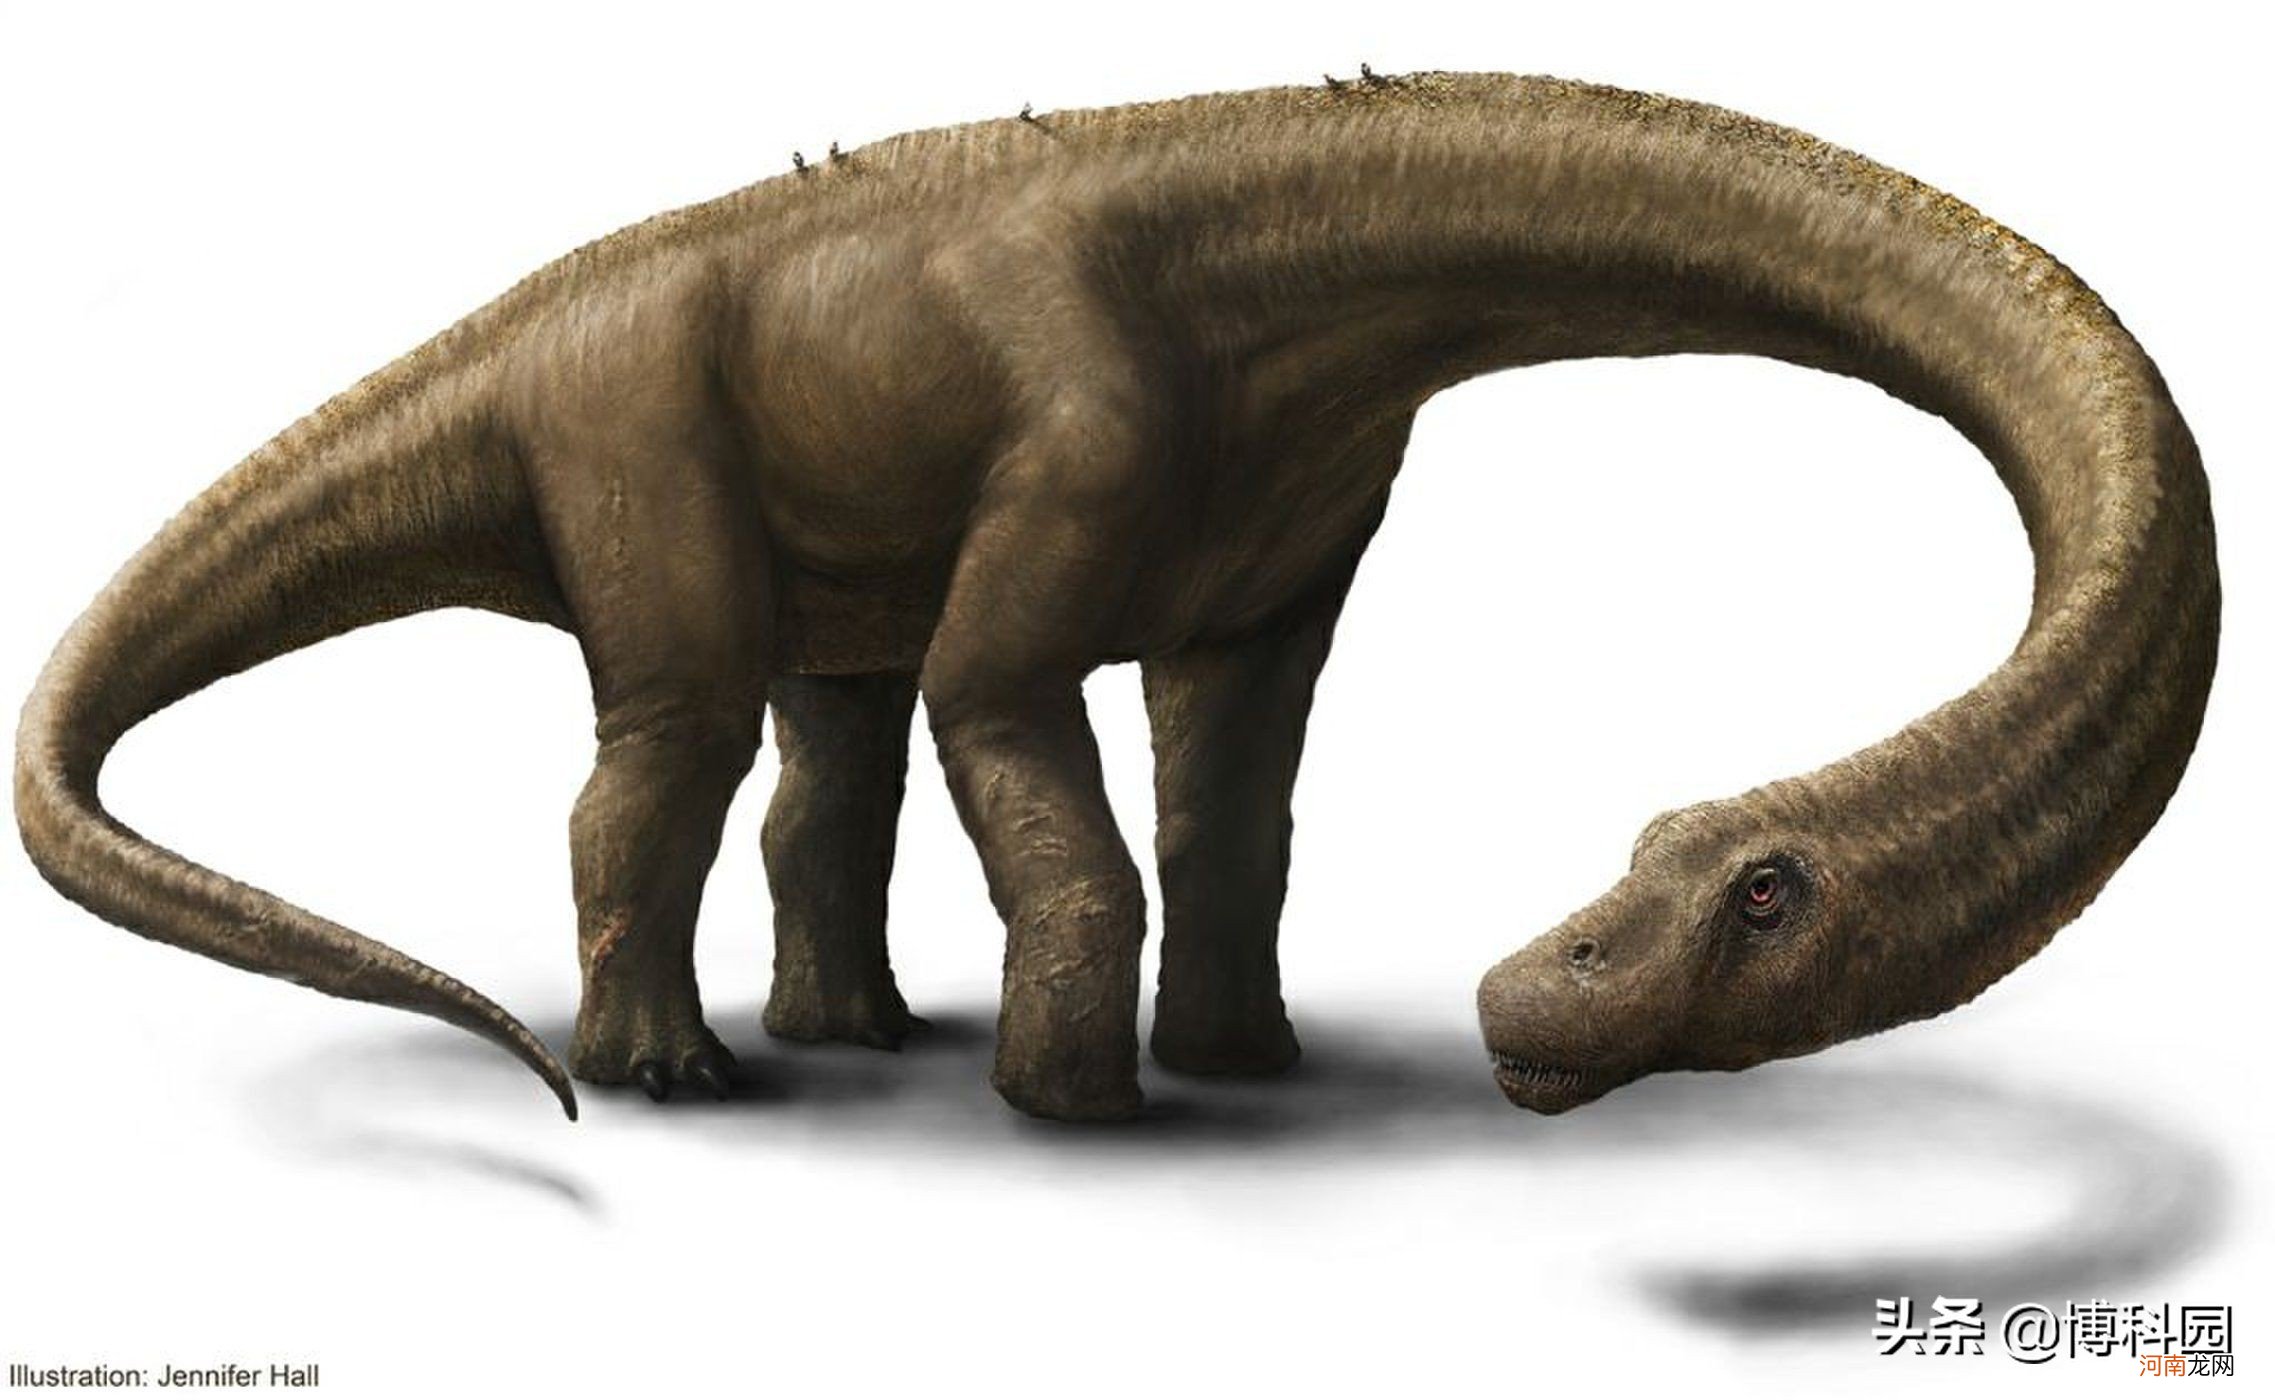 世界上最大的恐龙是啥 世界上最大的恐龙是什么恐龙